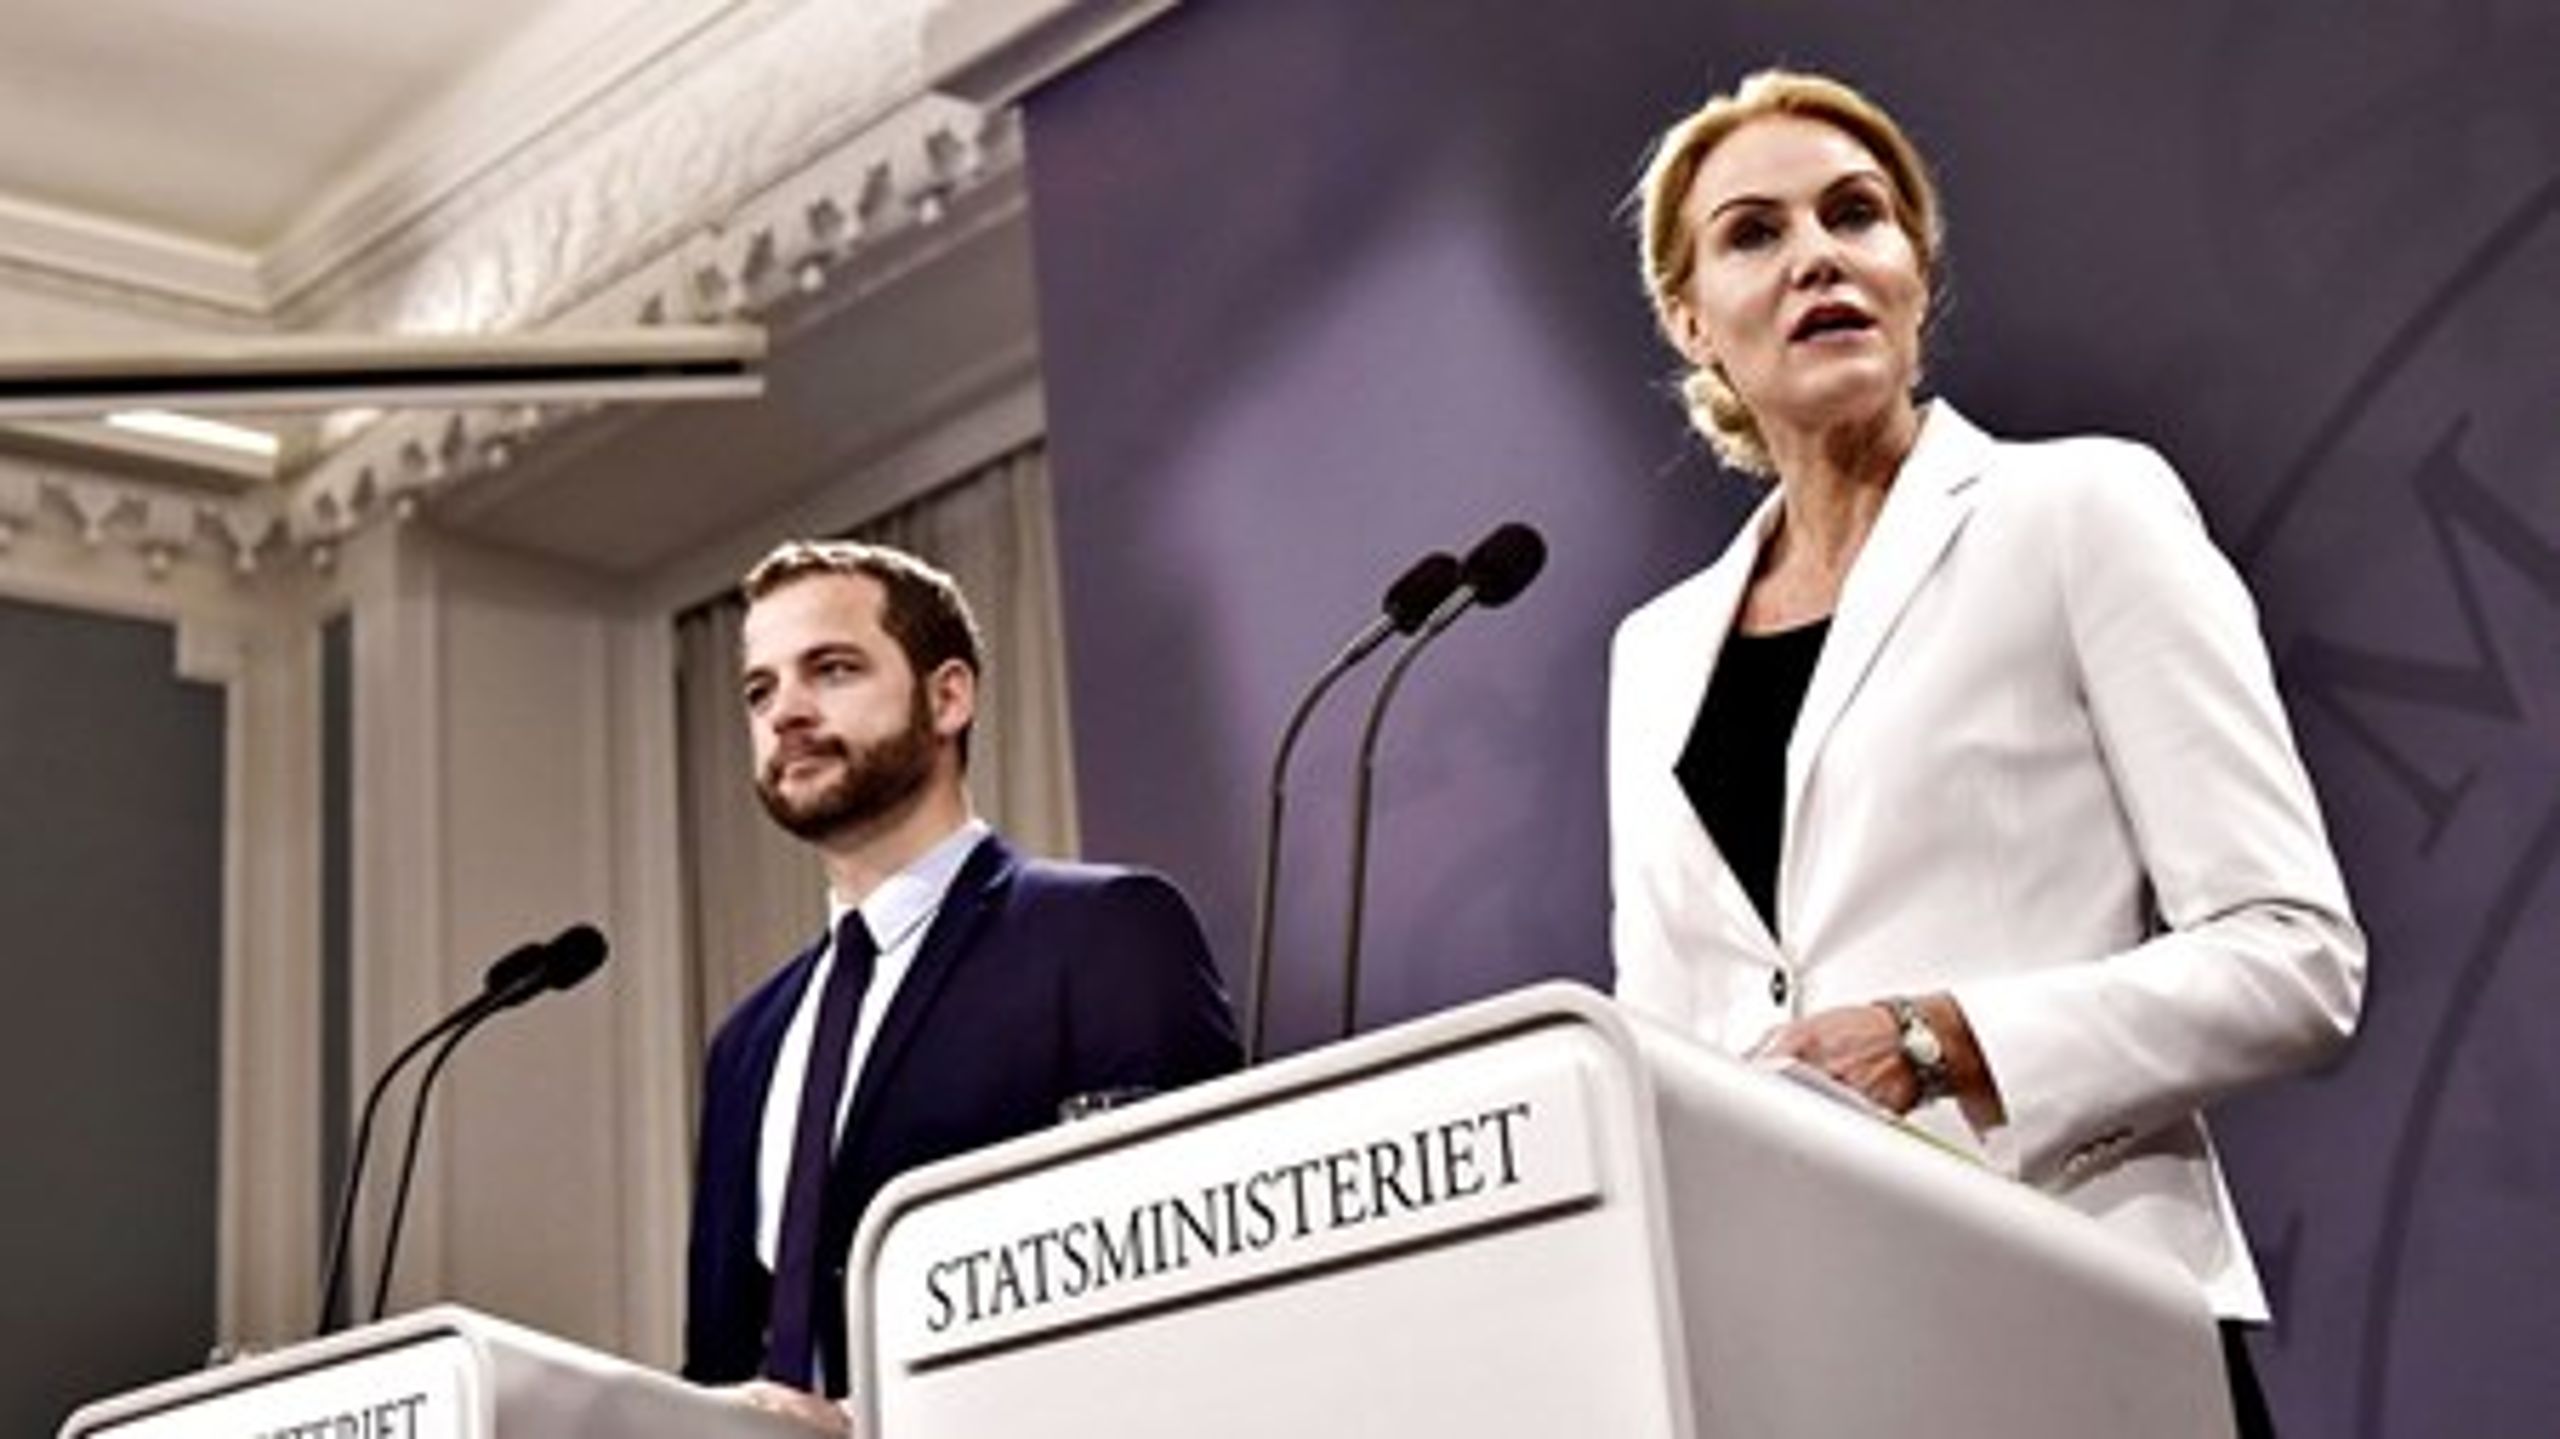 Statsminister Helle Thorning-Schmidt (S) og økonomi- og indenrigsminister Morten Østergaard (R)&nbsp;fremlagde tirsdag formiddag regeringens velfærdsudspil med prioriteringer for 39 milliarder kroner i den offentlige sektor ind til 2020.